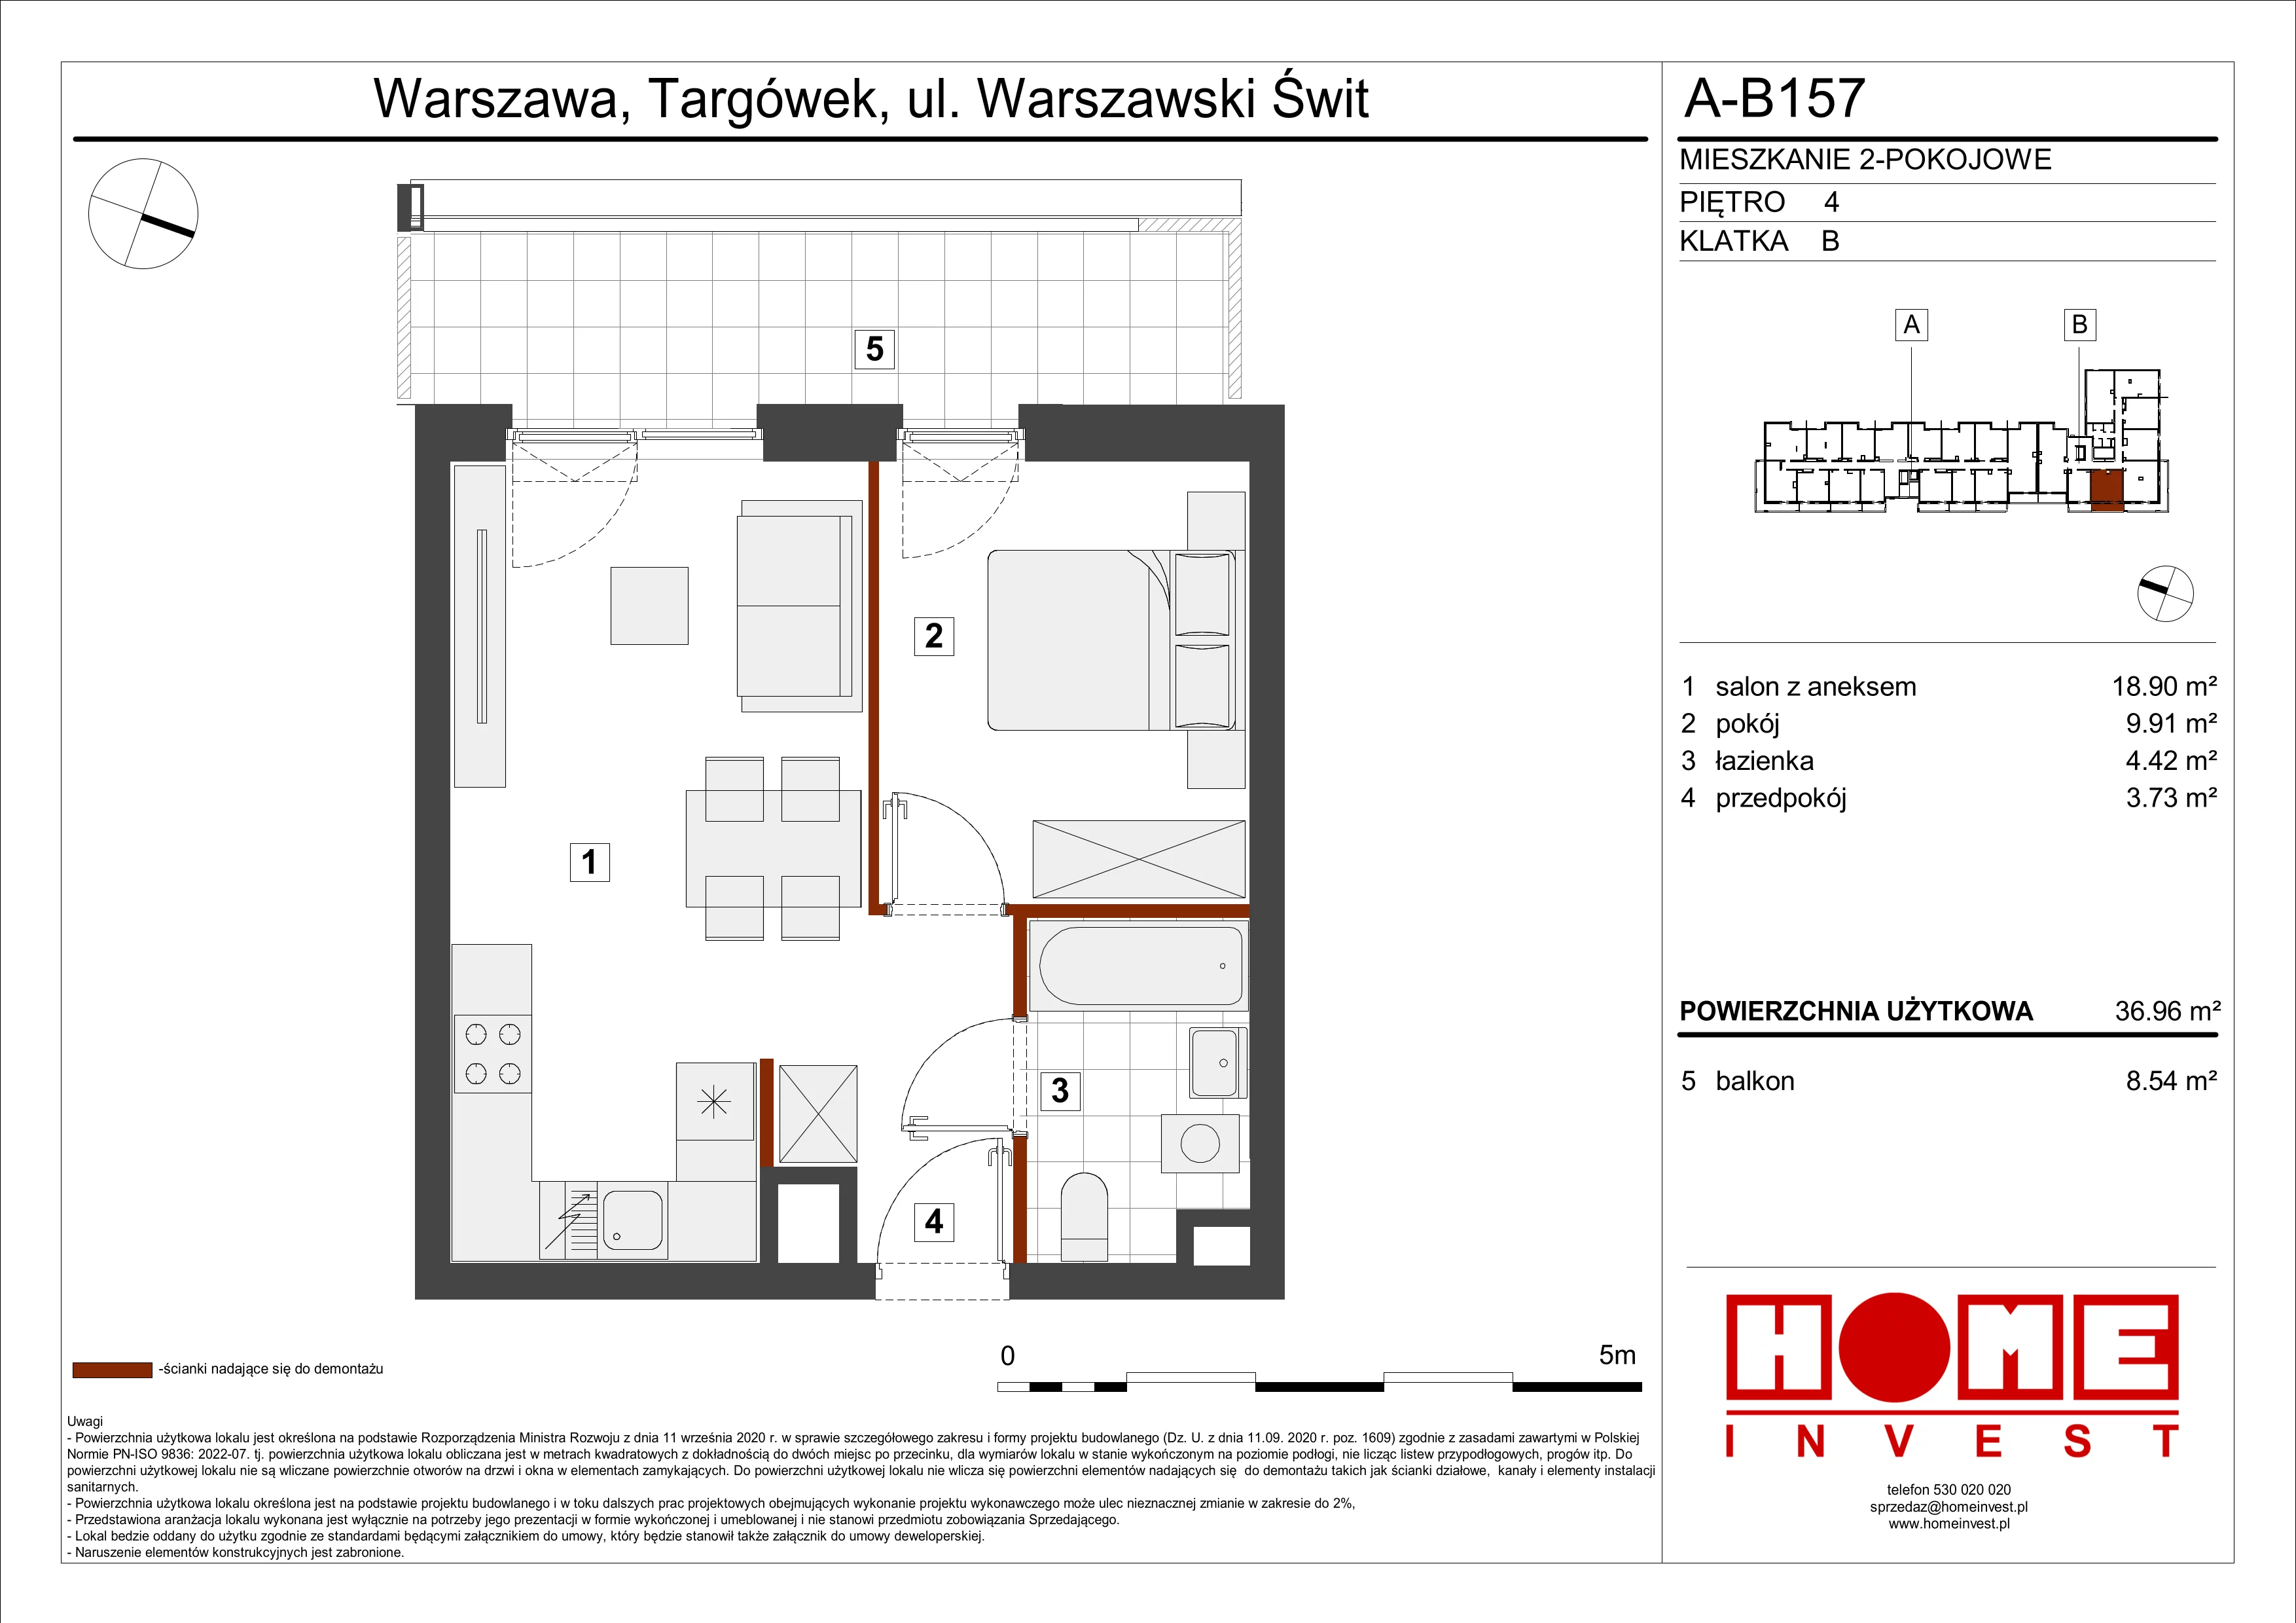 Mieszkanie 36,96 m², piętro 4, oferta nr A-B157, Warszawski Świt, Warszawa, Targówek, Bródno, ul. Warszawski Świt 5